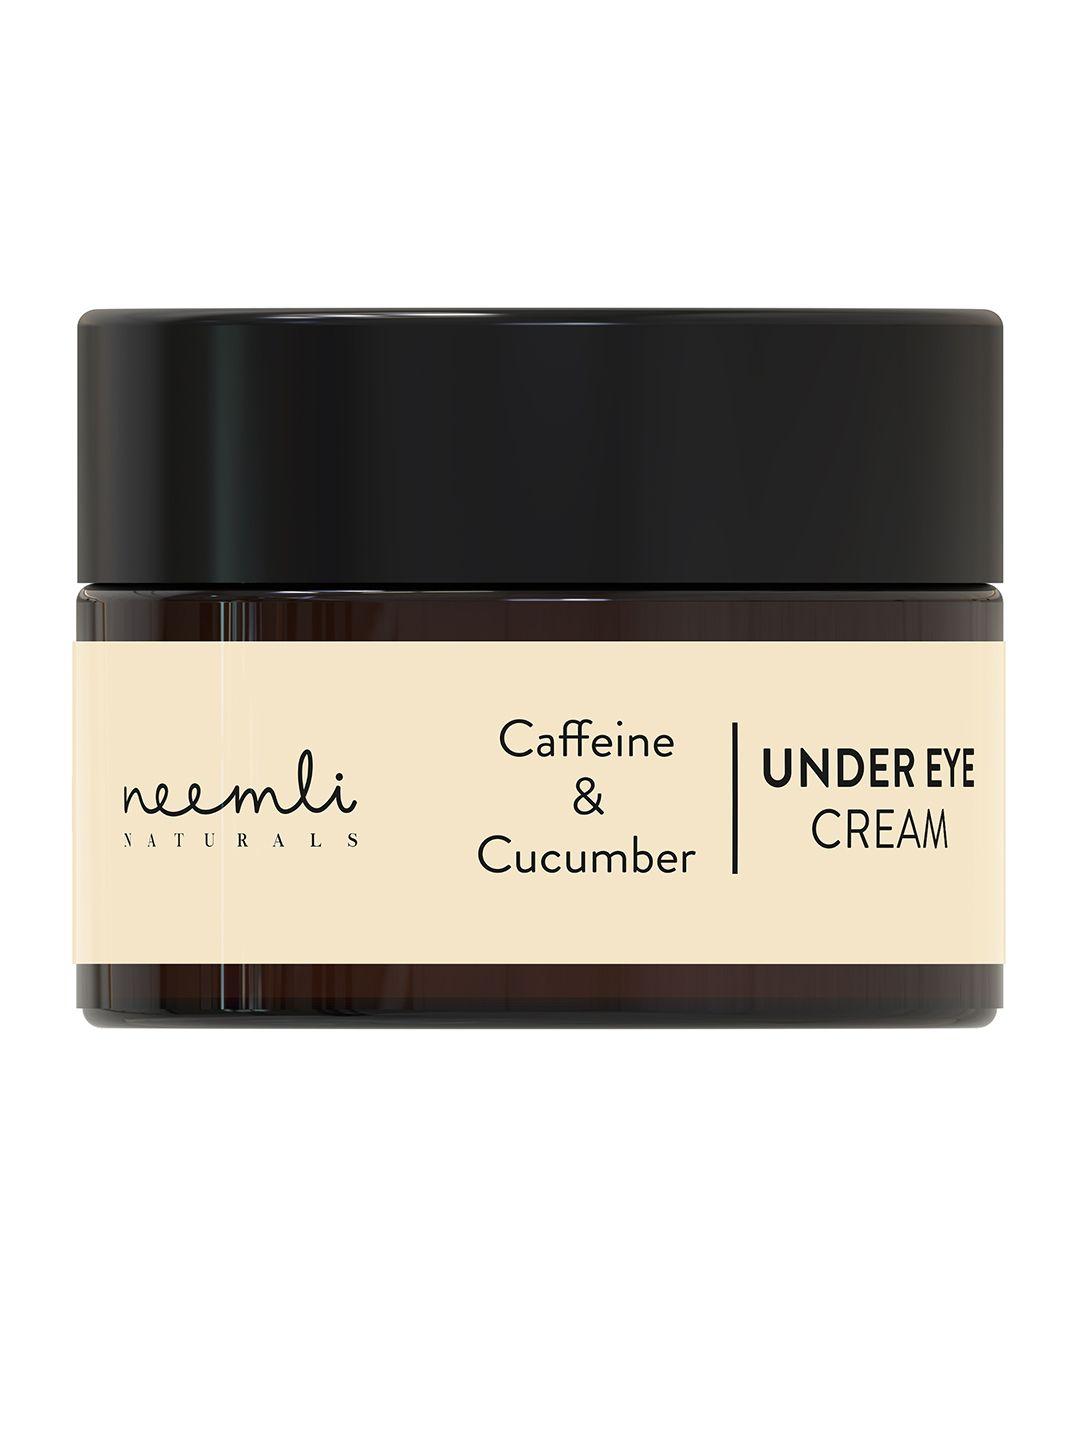 neemli naturals caffeine & cucumber under eye cream -15 ml